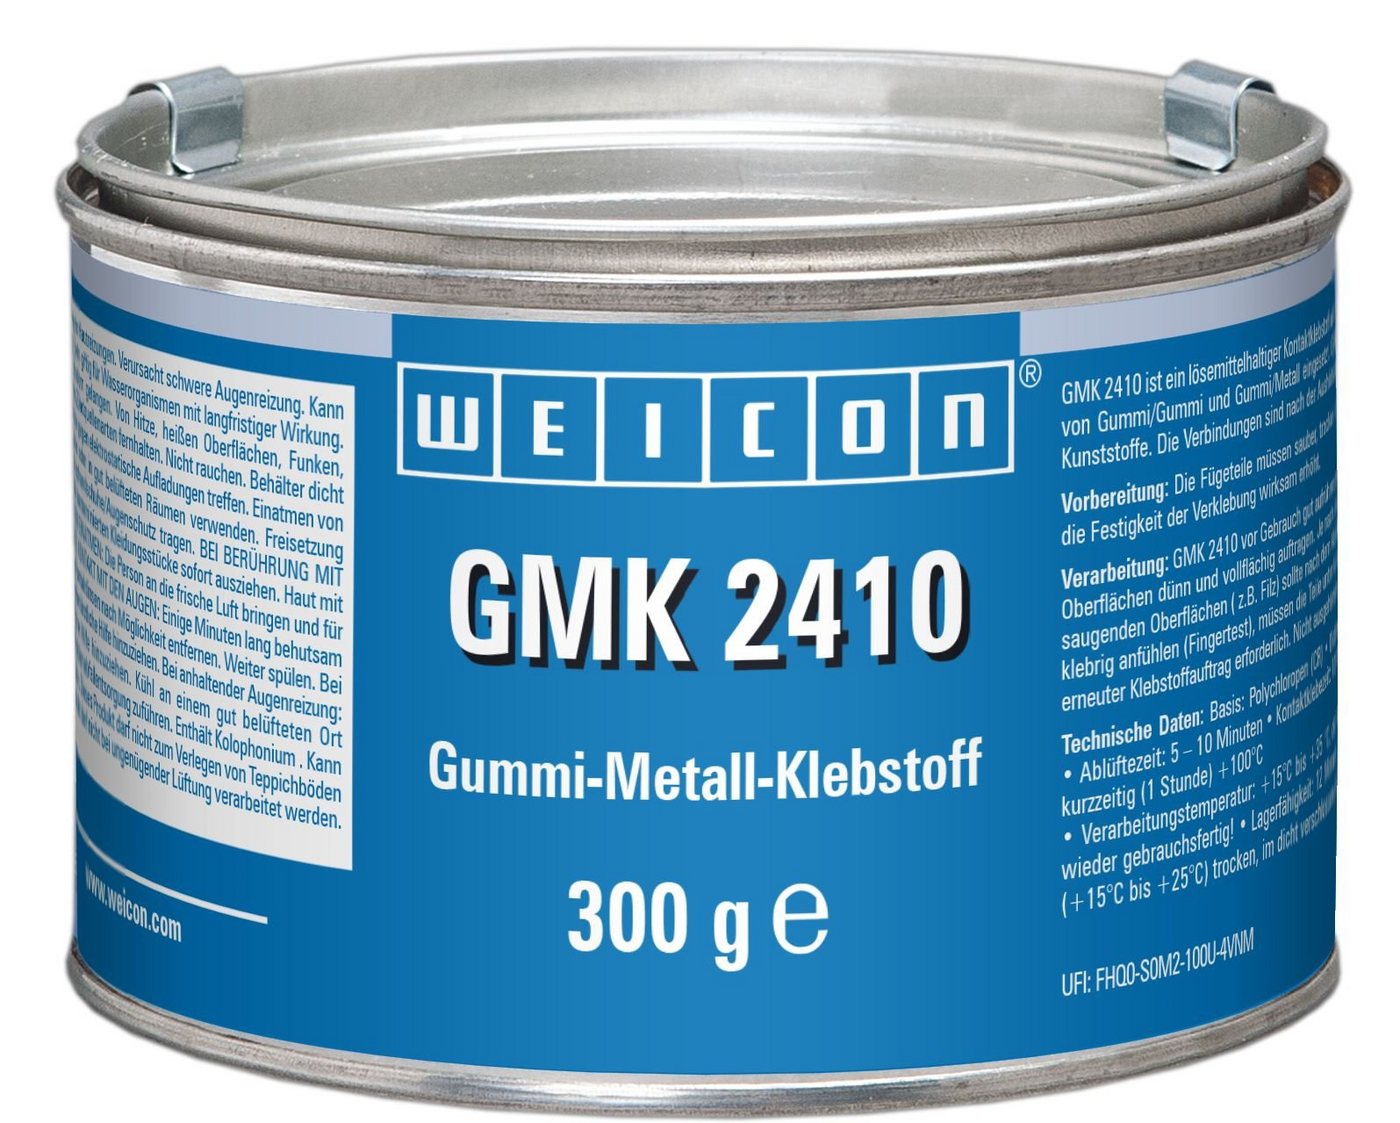 WEICON Klebstoff GMK 2410 Kontaktklebstoff, schnellhärtender 1K Gummi-Metall-Kleber von WEICON